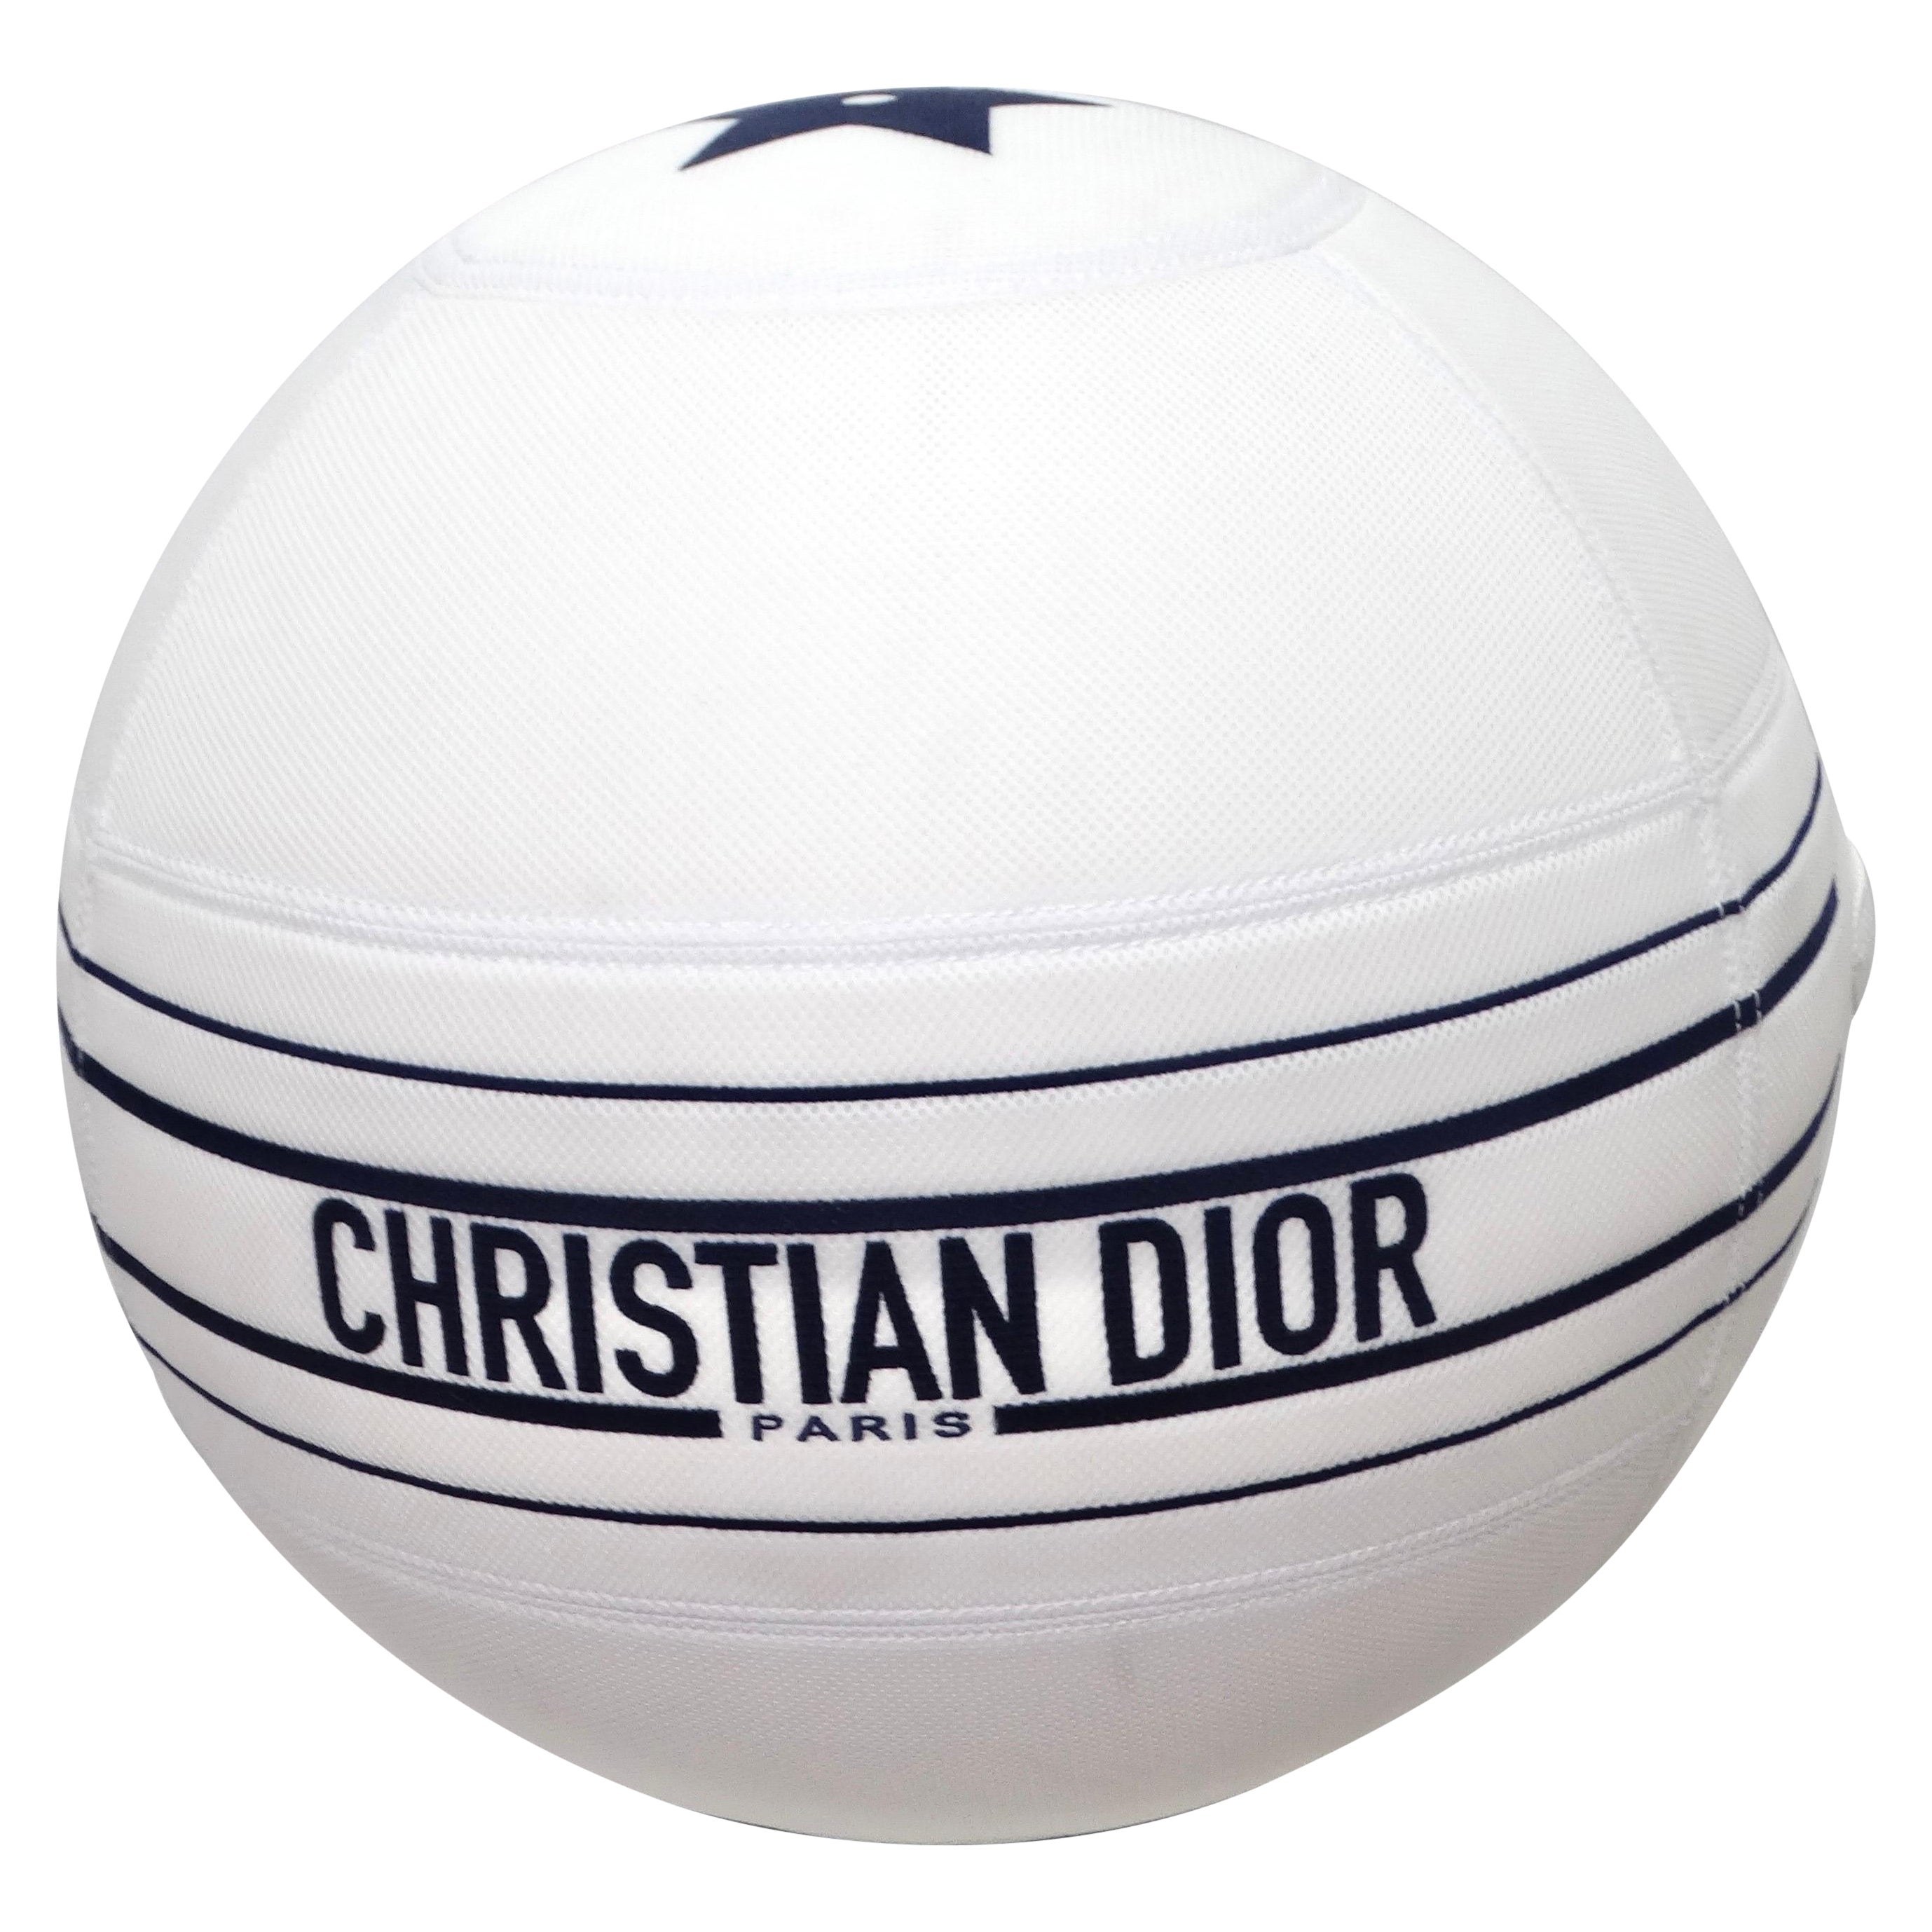 La boule de médecine Christian Dior en édition limitée